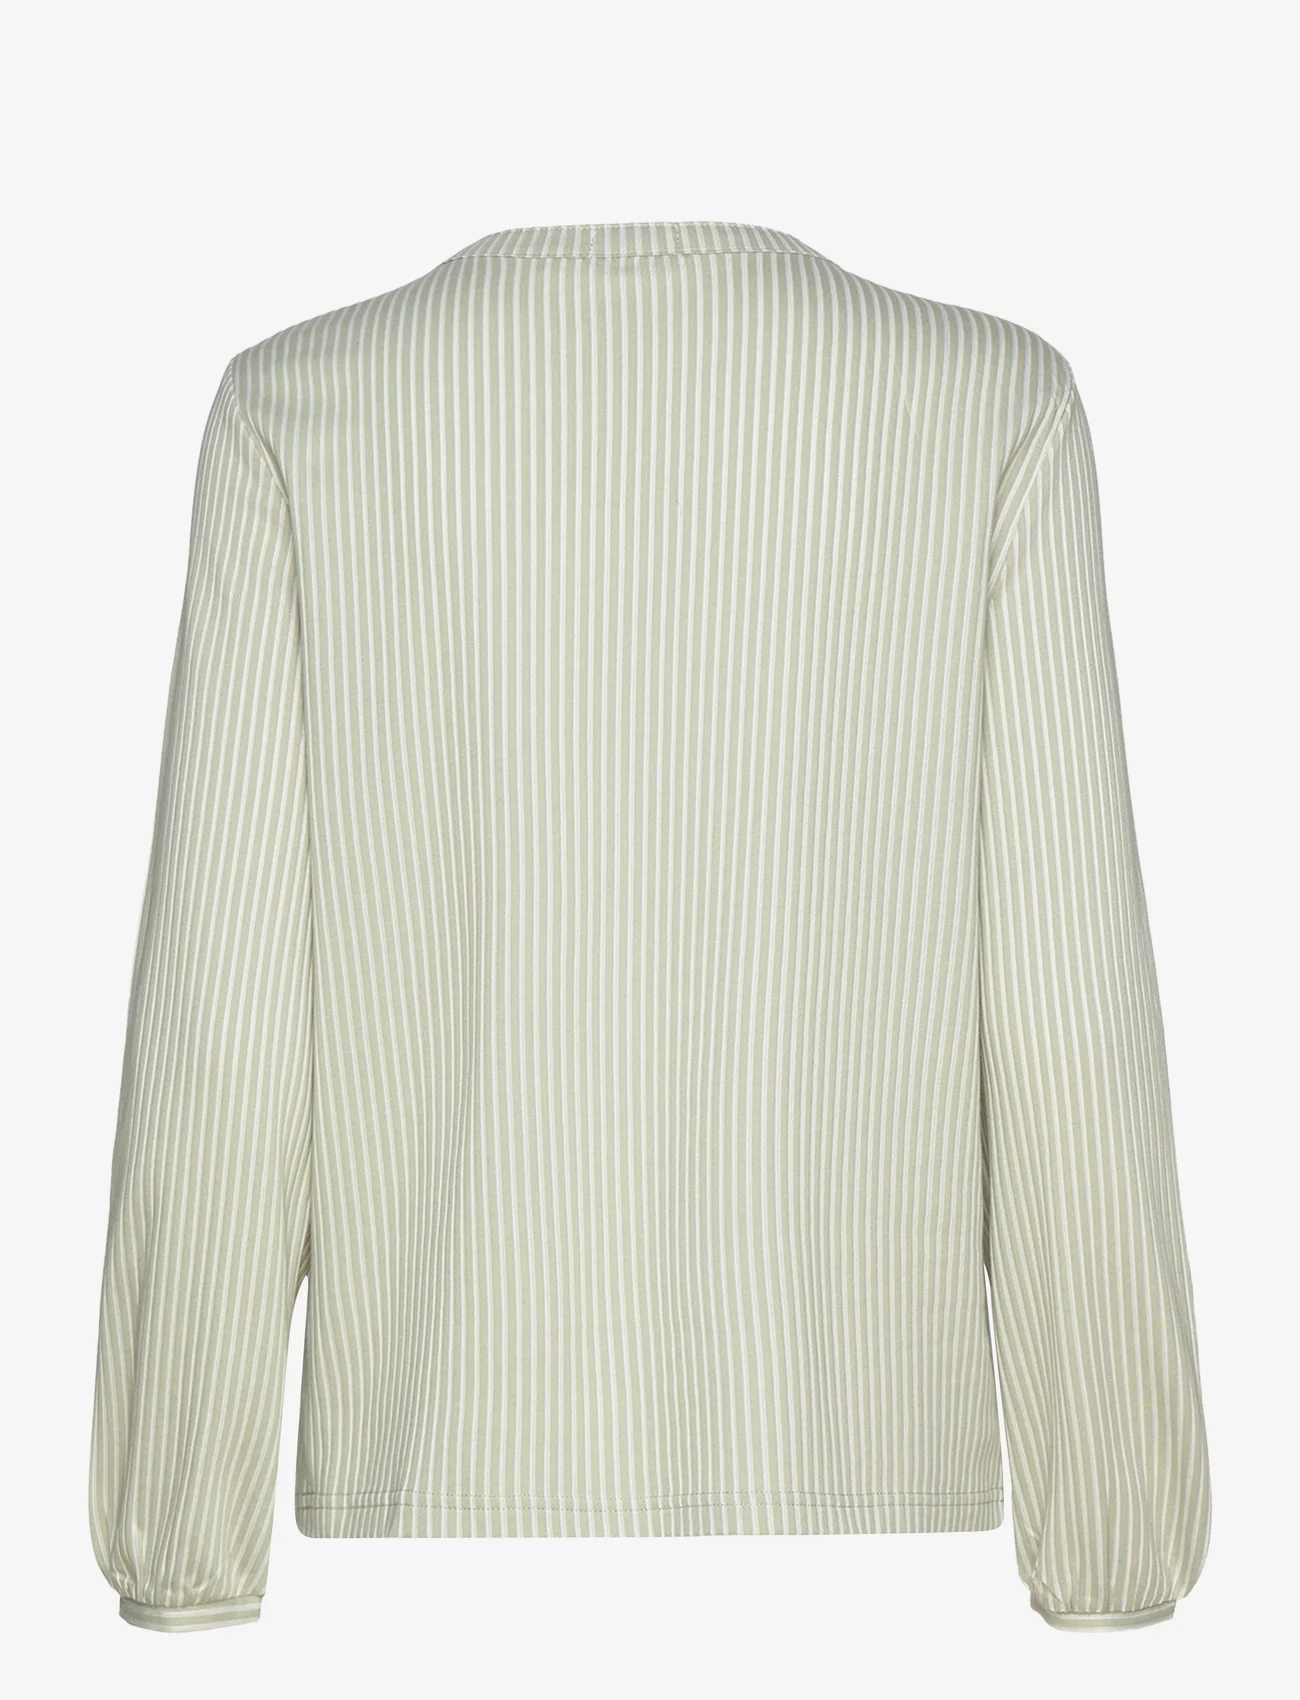 Tom Tailor - T-shirt blouse vertical stripe - pitkähihaiset puserot - desert green white thin stripe - 1